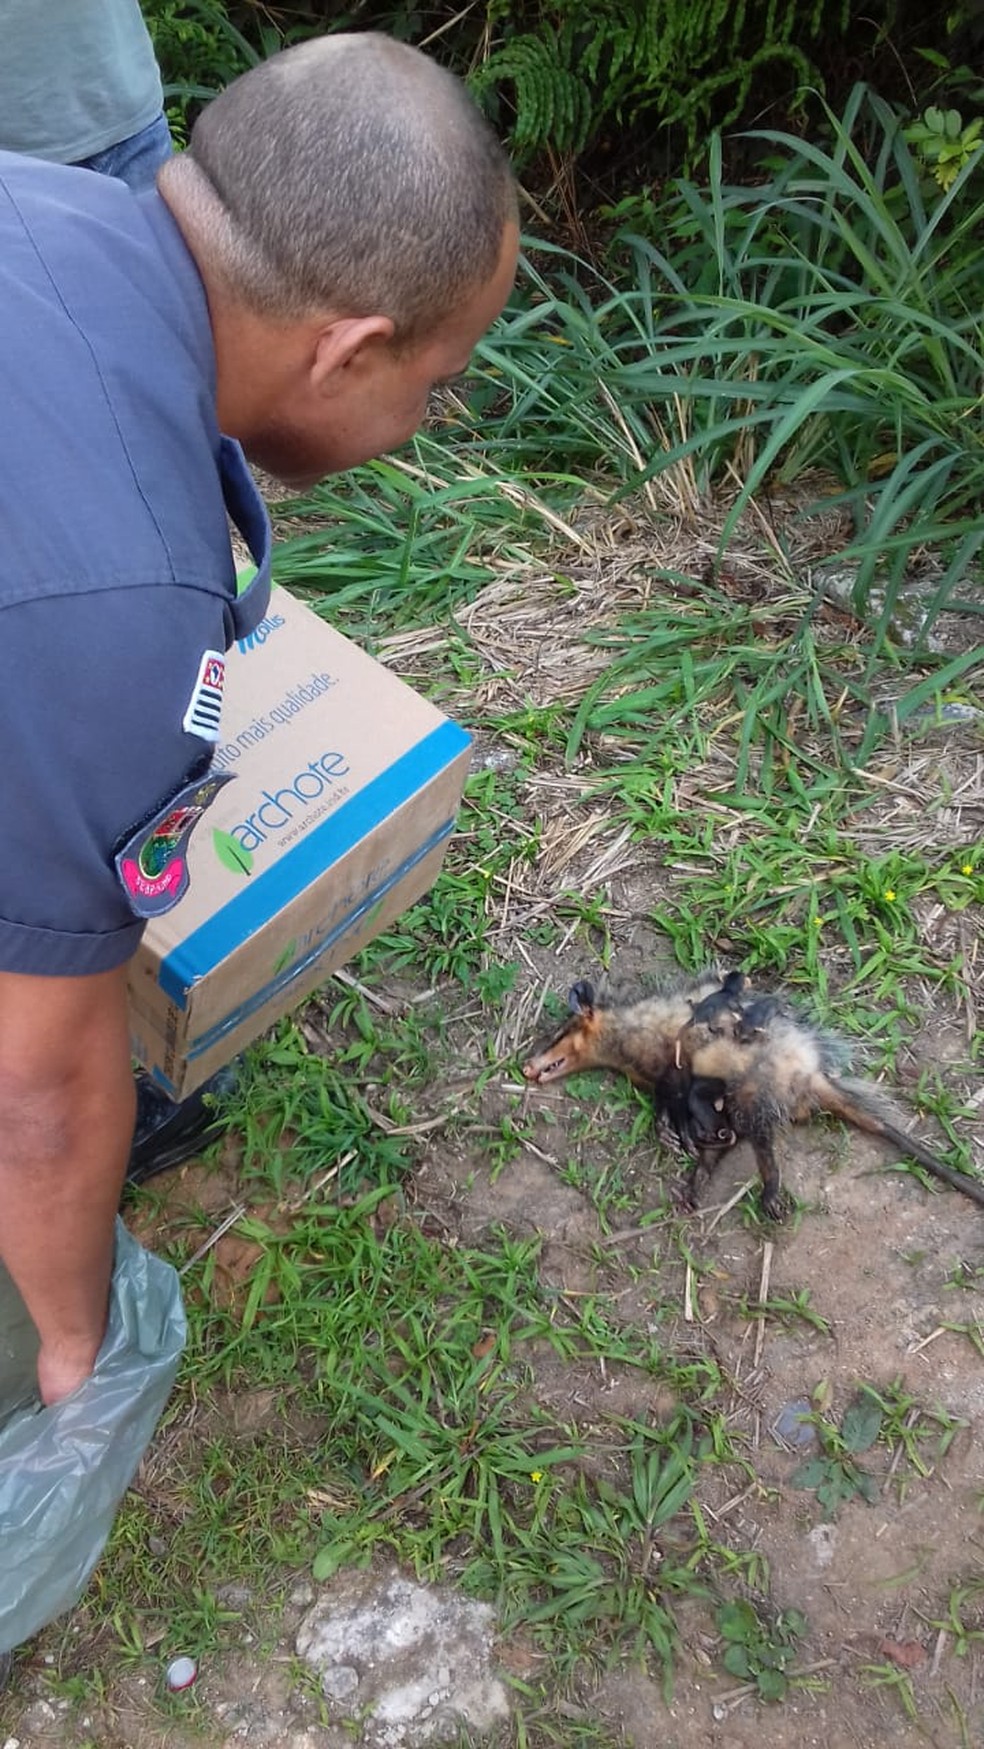 Gambá fêmea foi encontrada morta, mas filhotes resistiram após suposto atropelamento em Guarujá, SP — Foto: Gilmar dos Santos